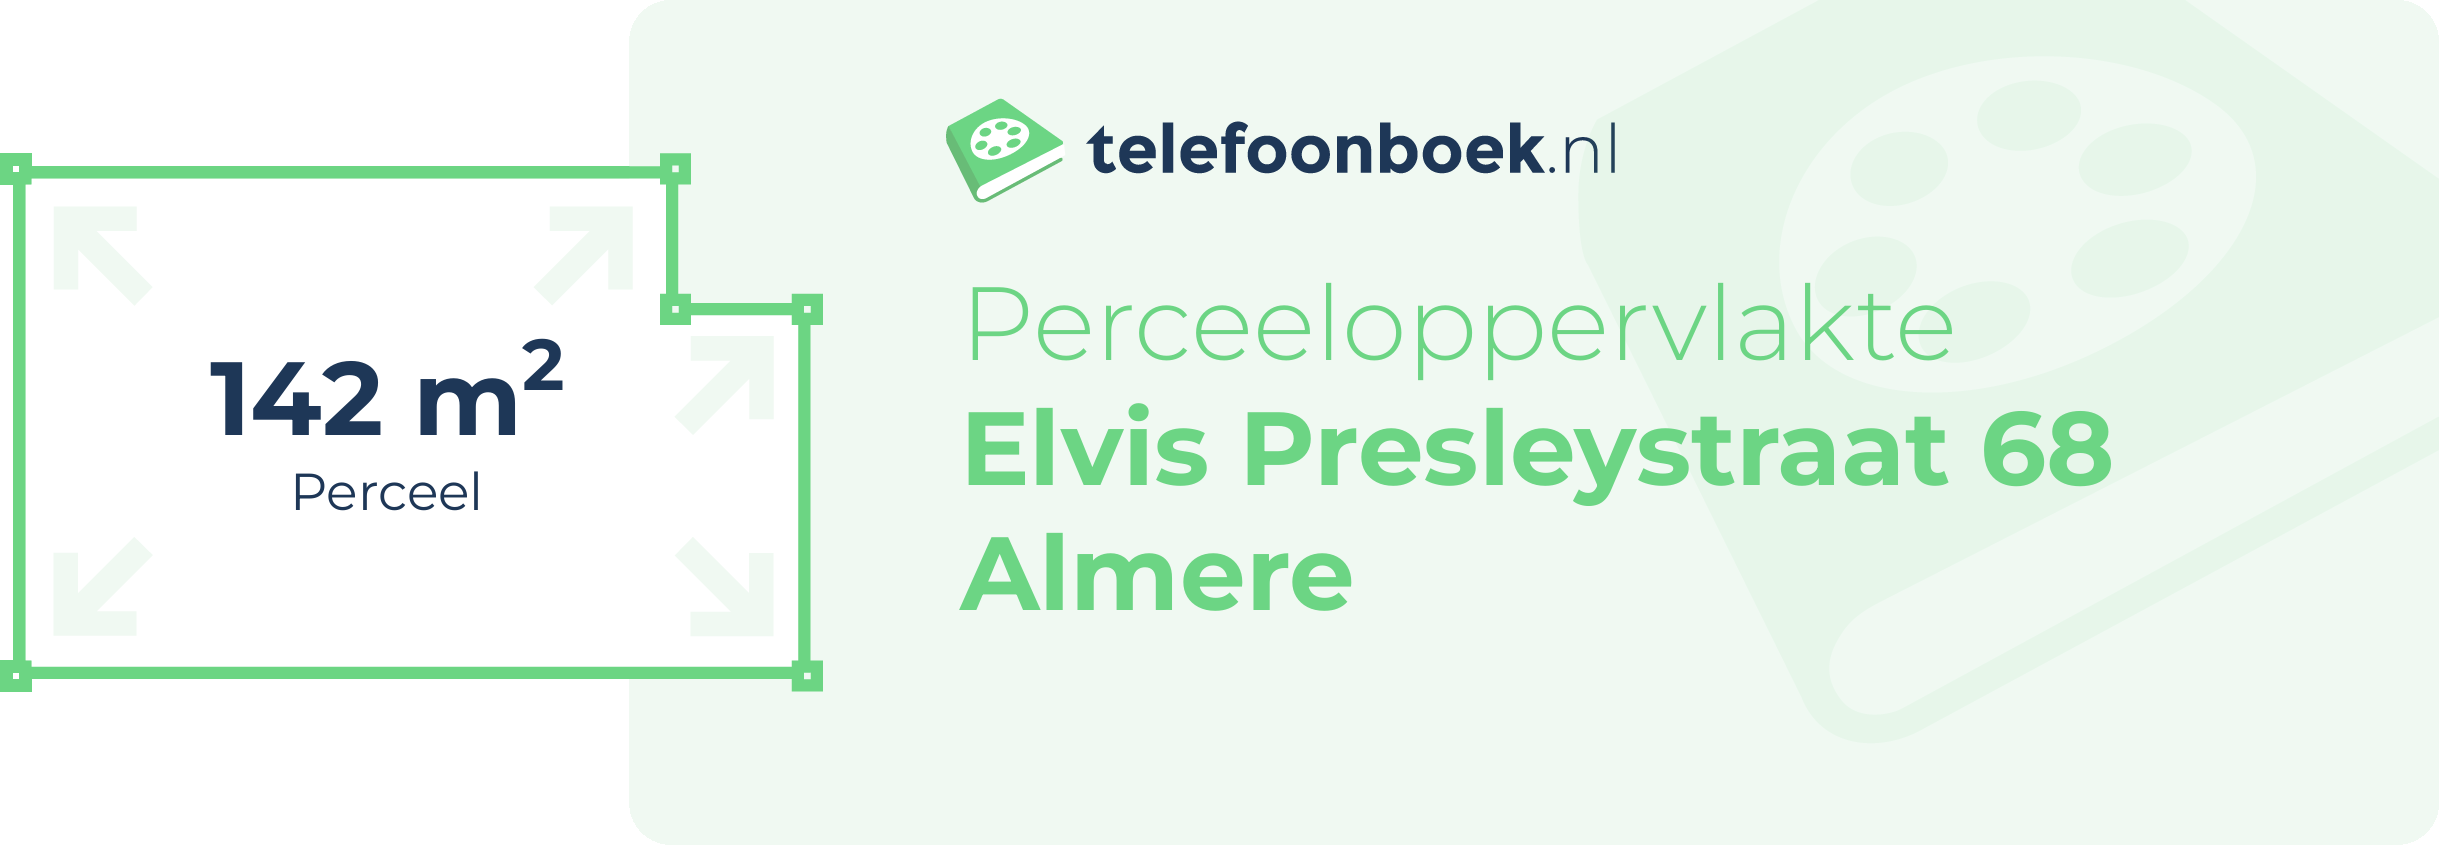 Perceeloppervlakte Elvis Presleystraat 68 Almere